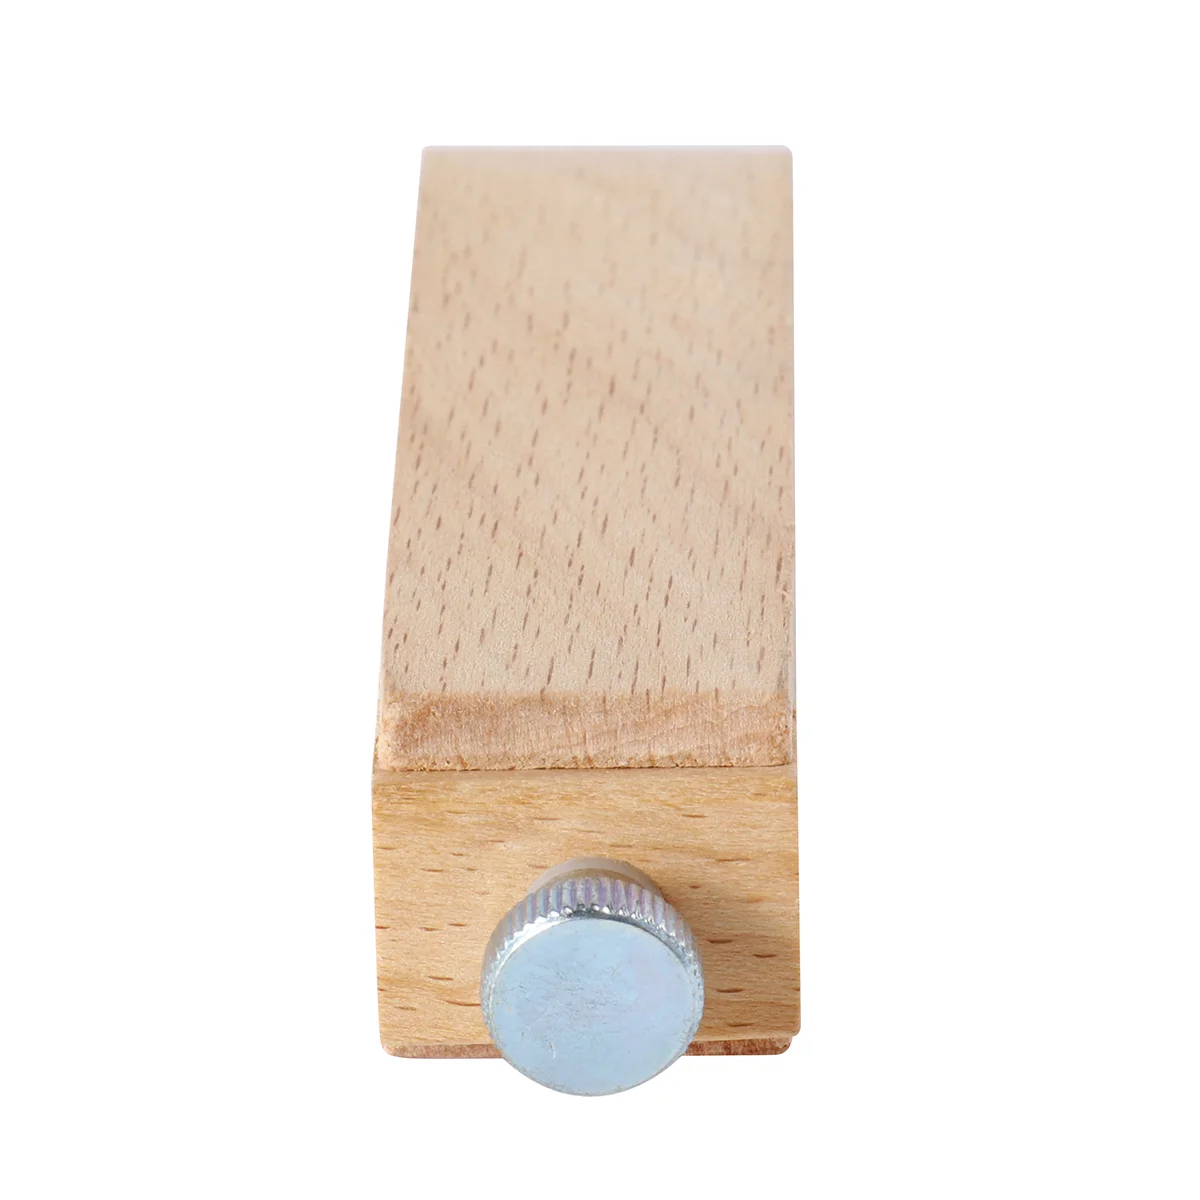 

Деревянный блок для наждачной бумаги, аксессуары для наждачной бумаги, деревянный держатель наждачной бумаги